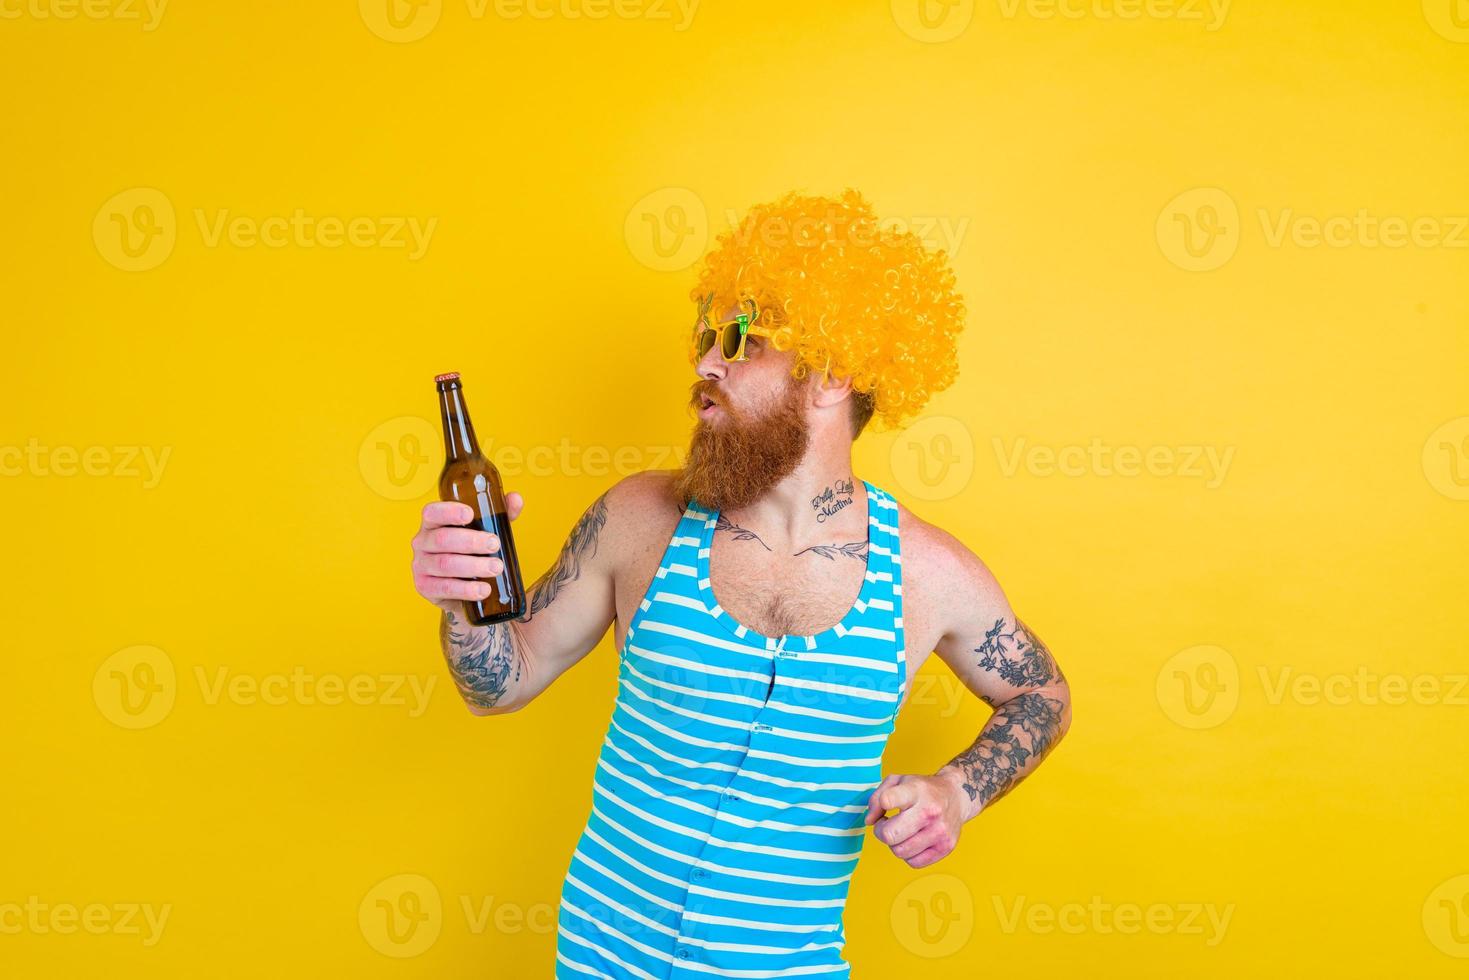 Mens met baard en zonnebril drankjes bier foto